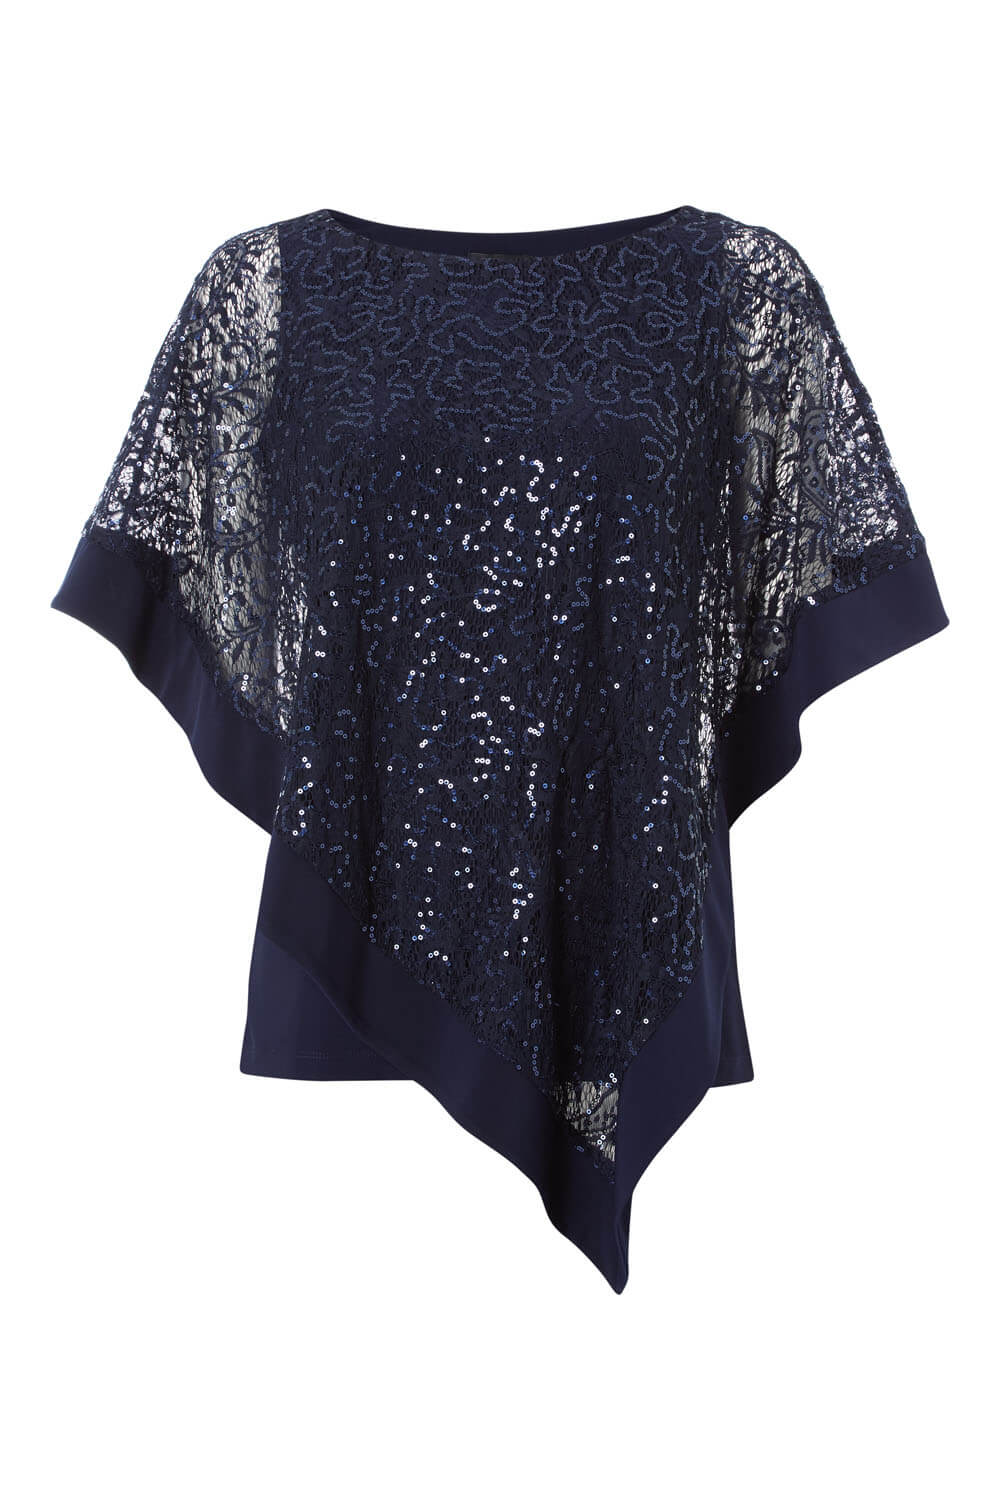 Sequin Embellished Overlay Top in Midnight Blue - Roman Originals UK